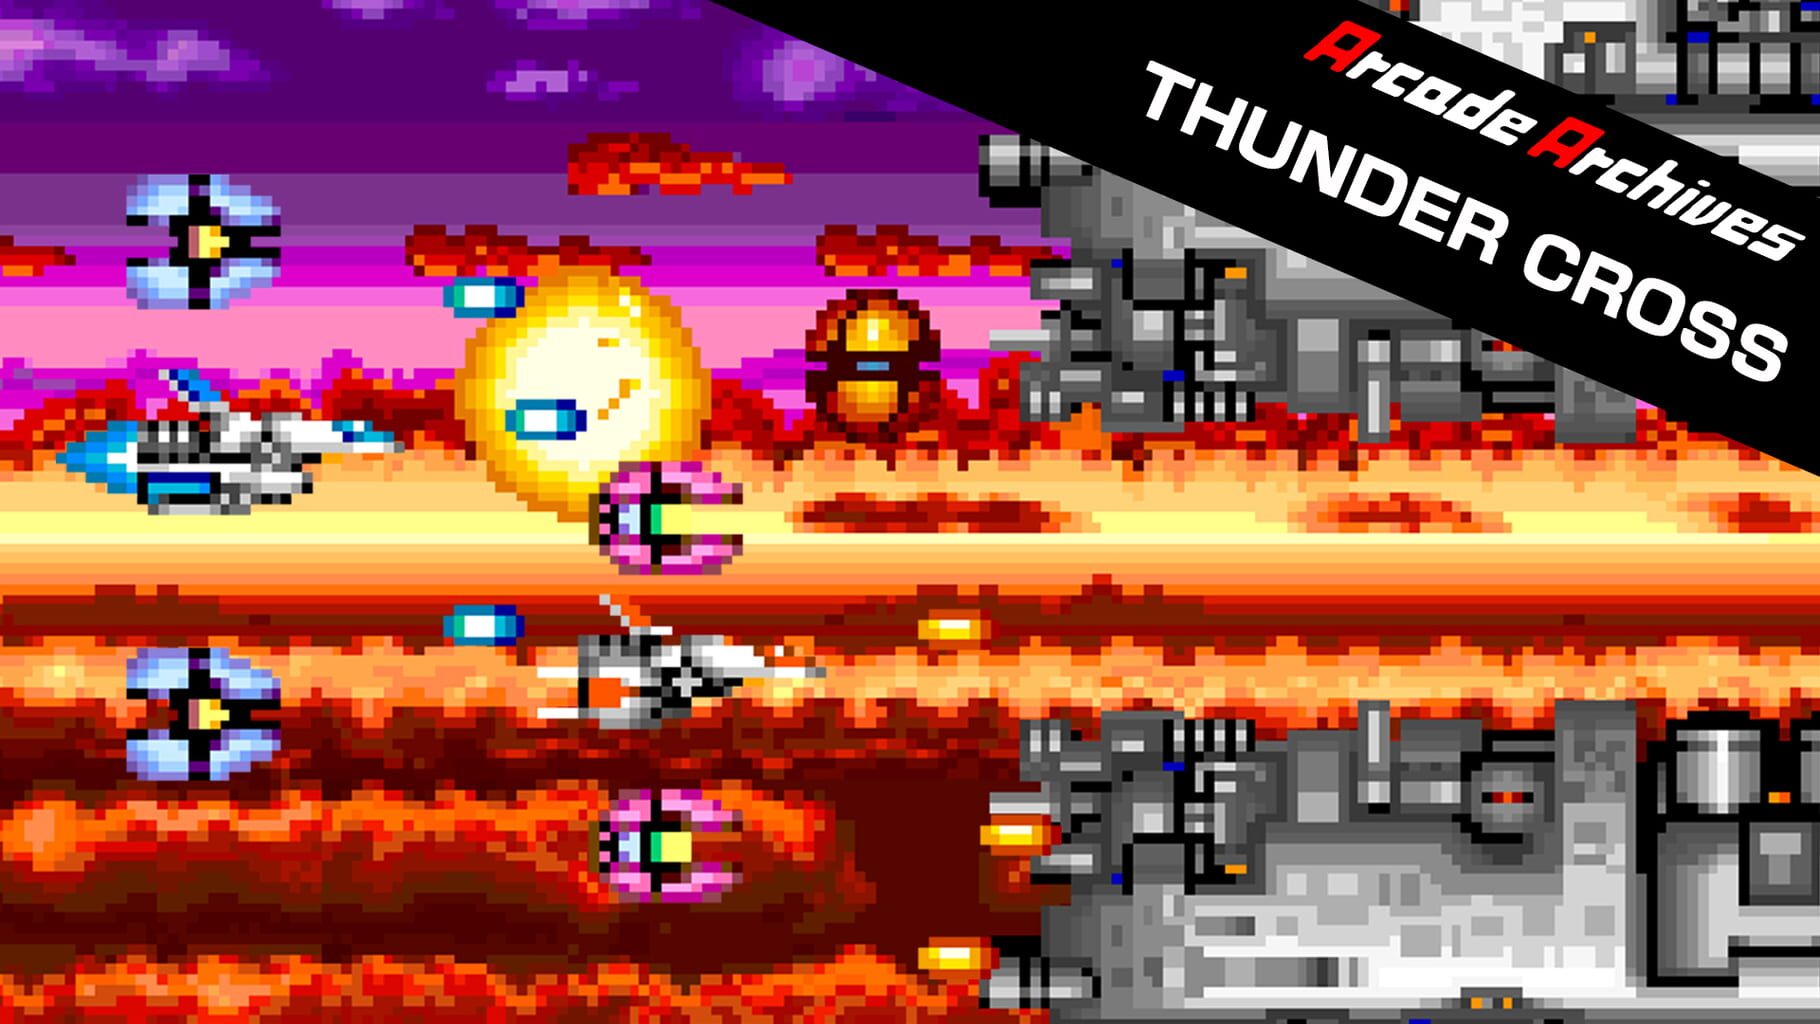 Arcade Archives: Thunder Cross artwork